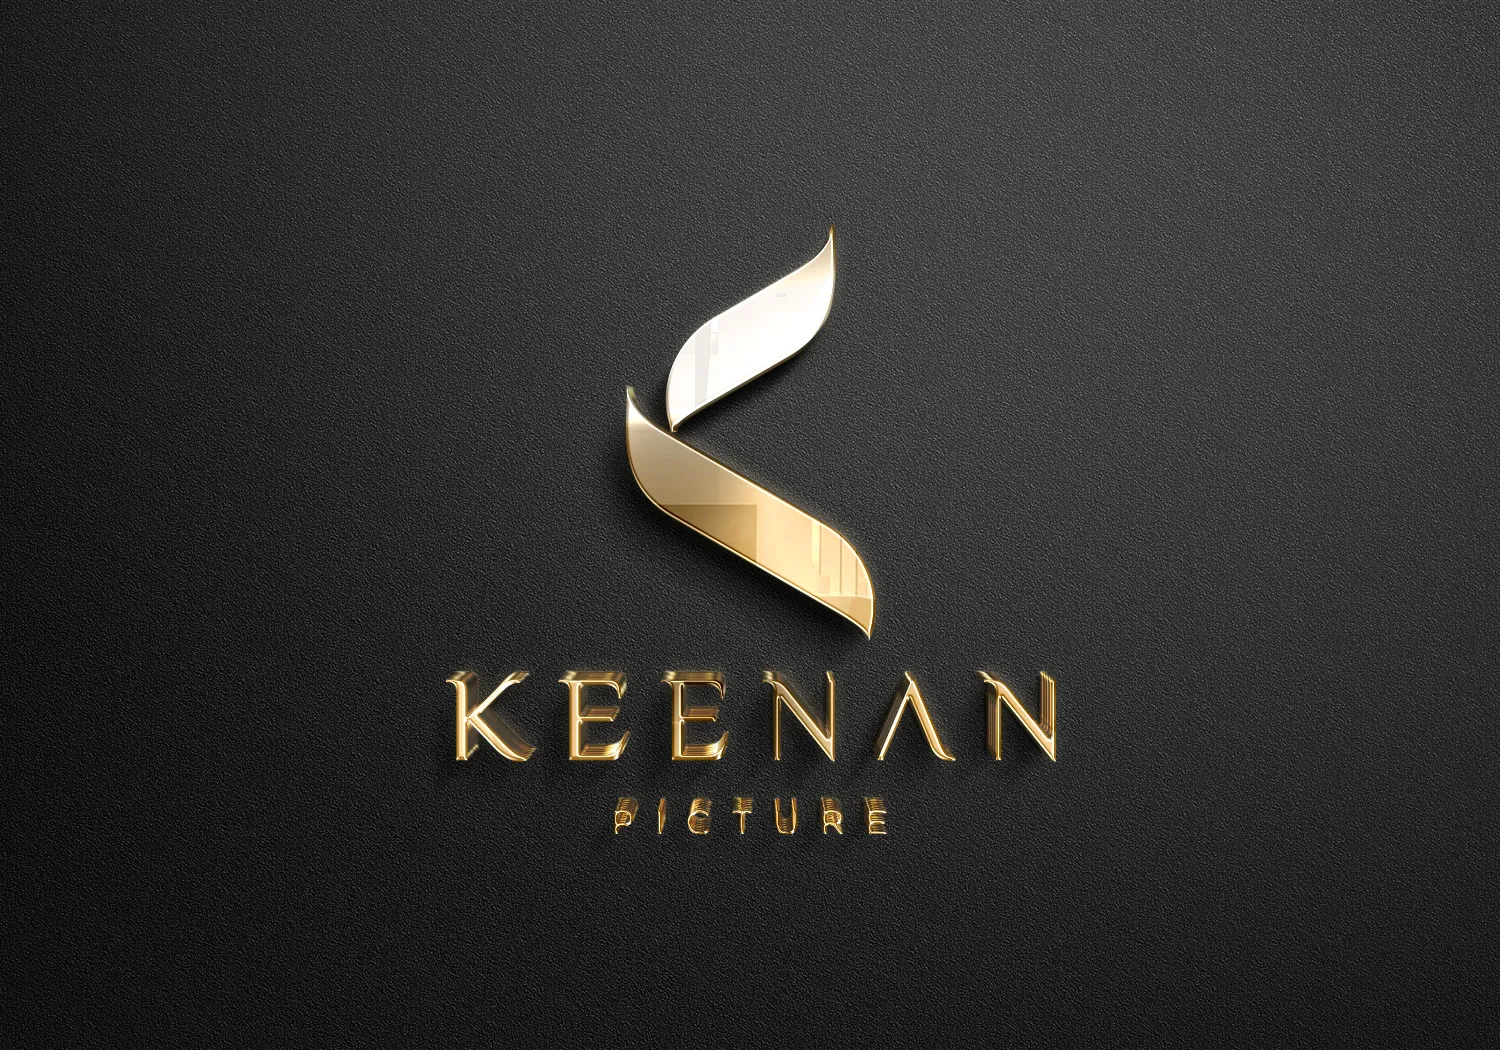 Logo Keenan Picture Mockup